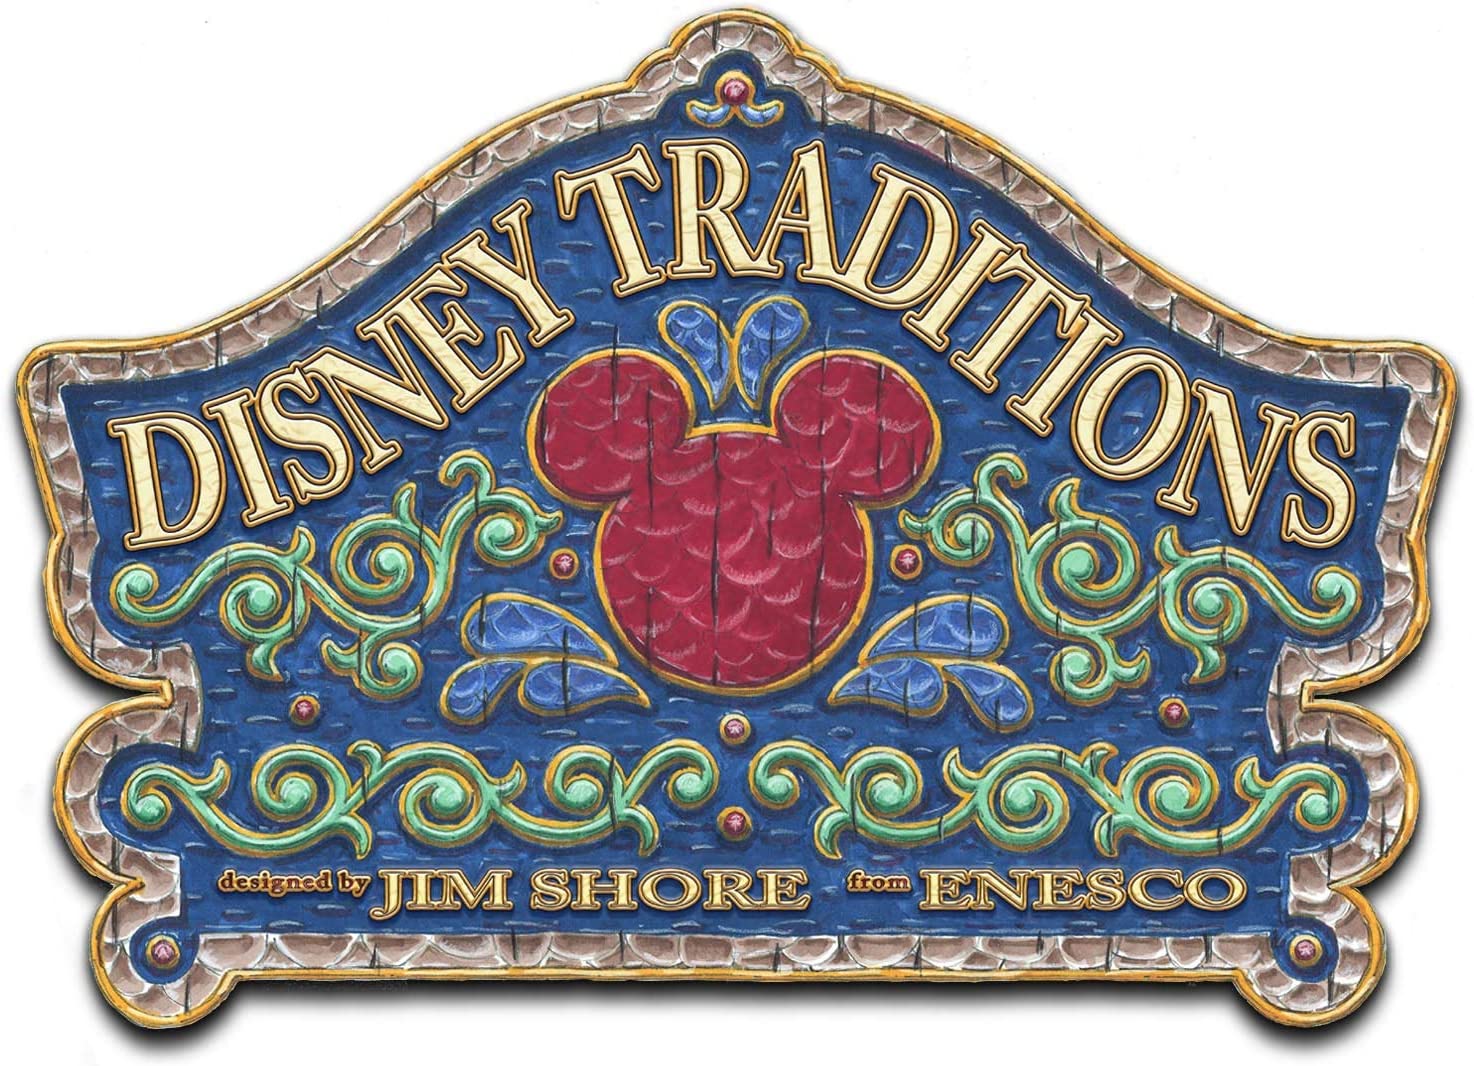 Minnie Mouse "Sailor" figurine - Disney by Jim Shore